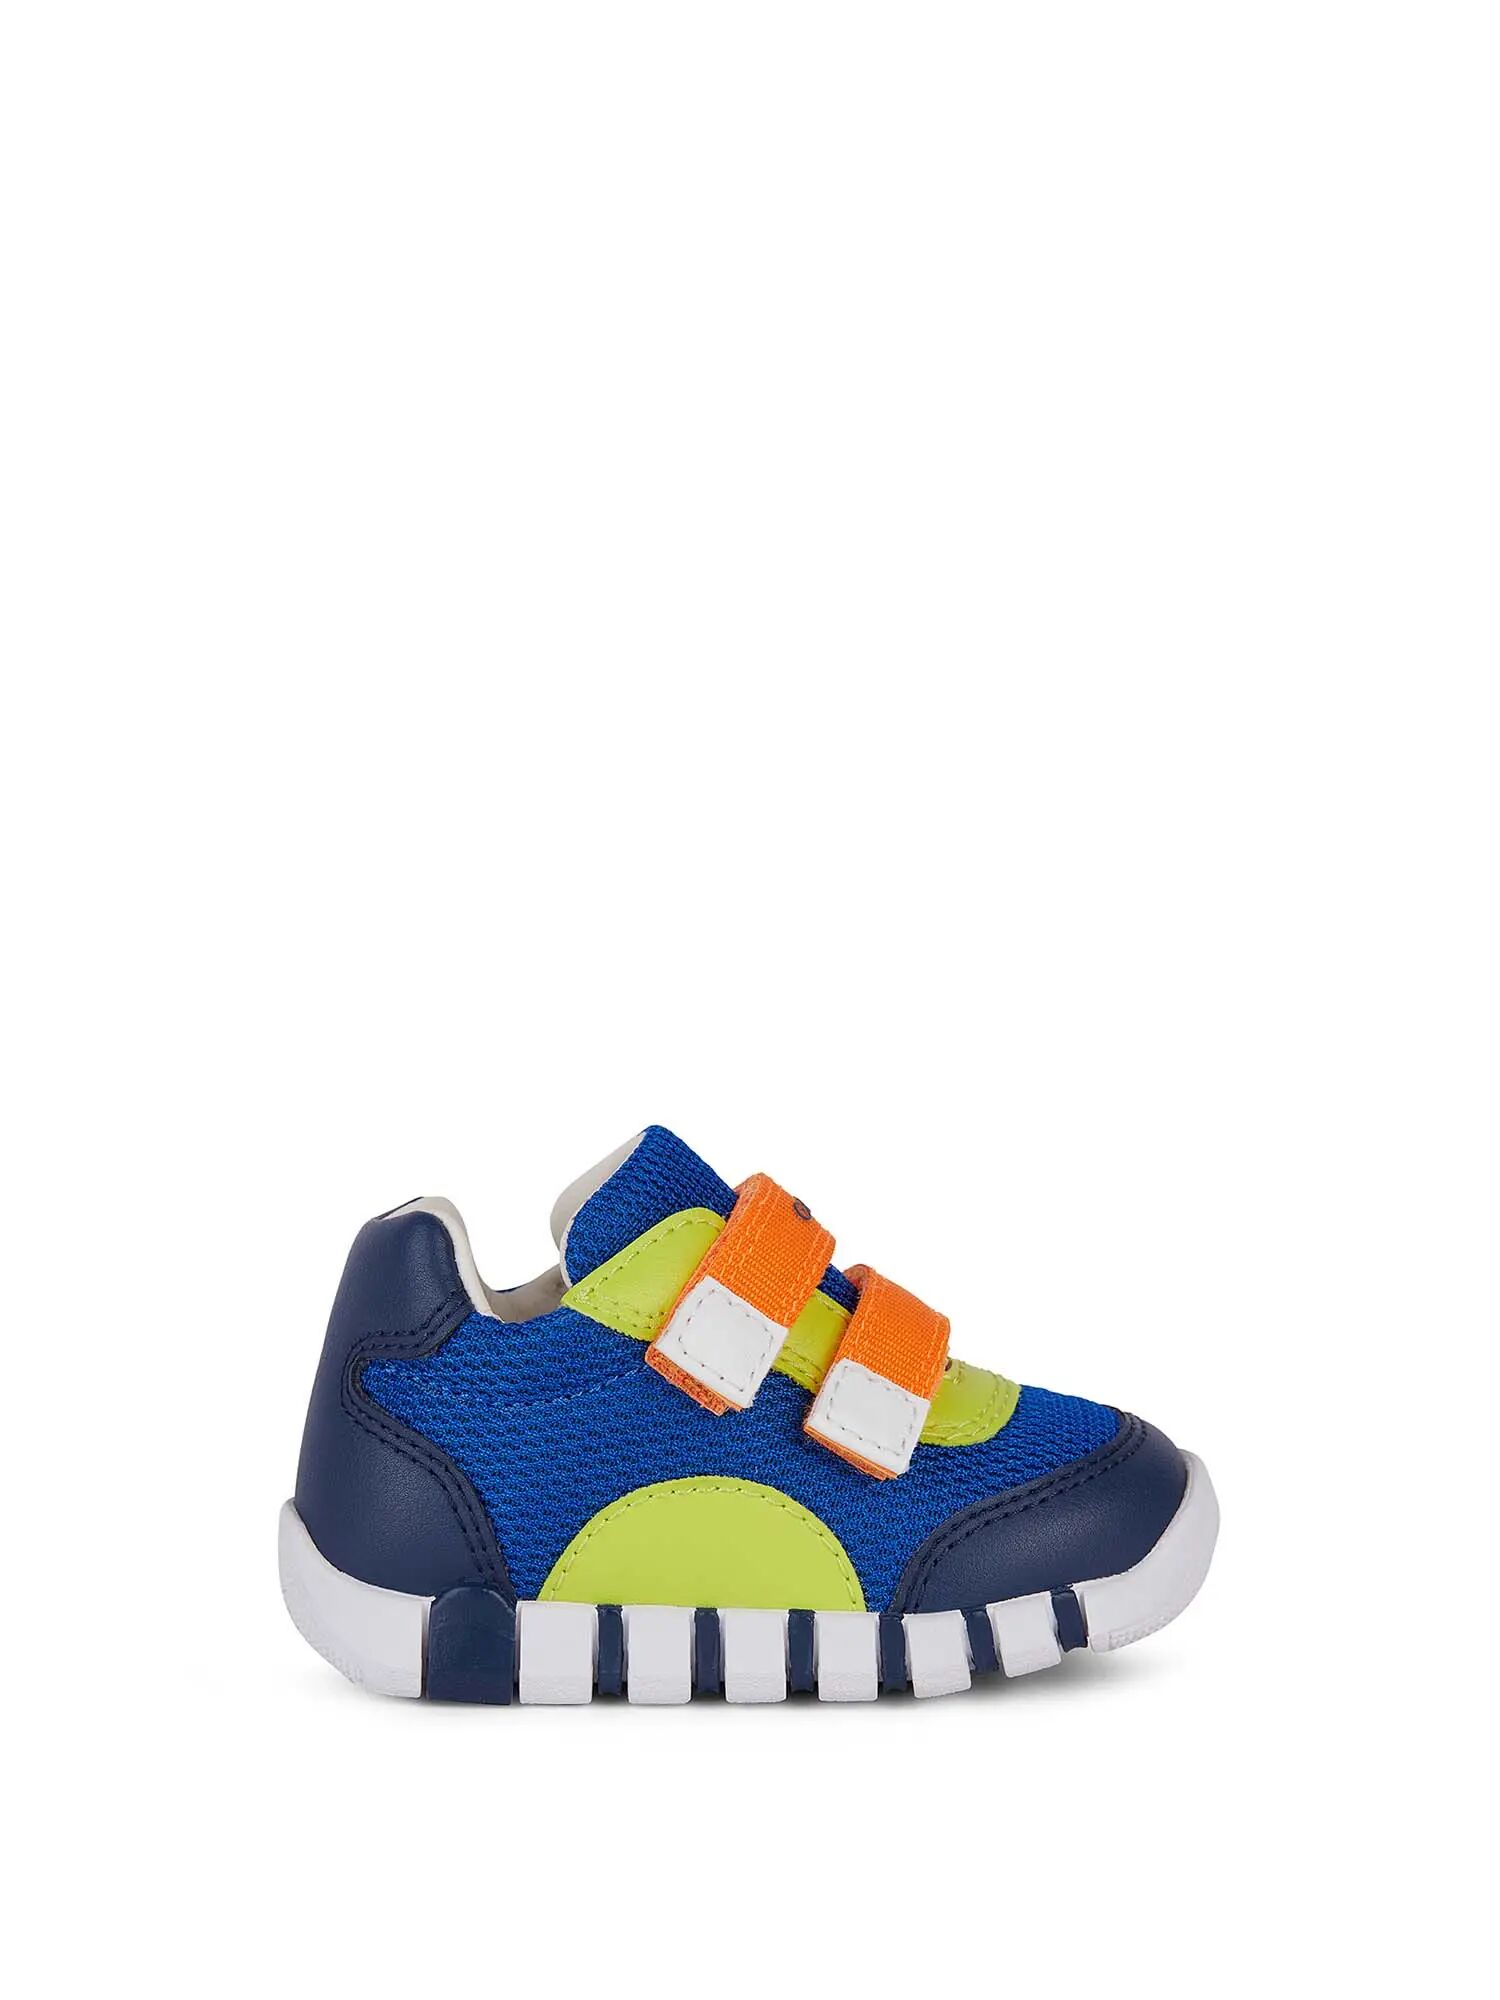 Geox Sneakers Bambino Colore Blu/arancio BLU/ARANCIO 19